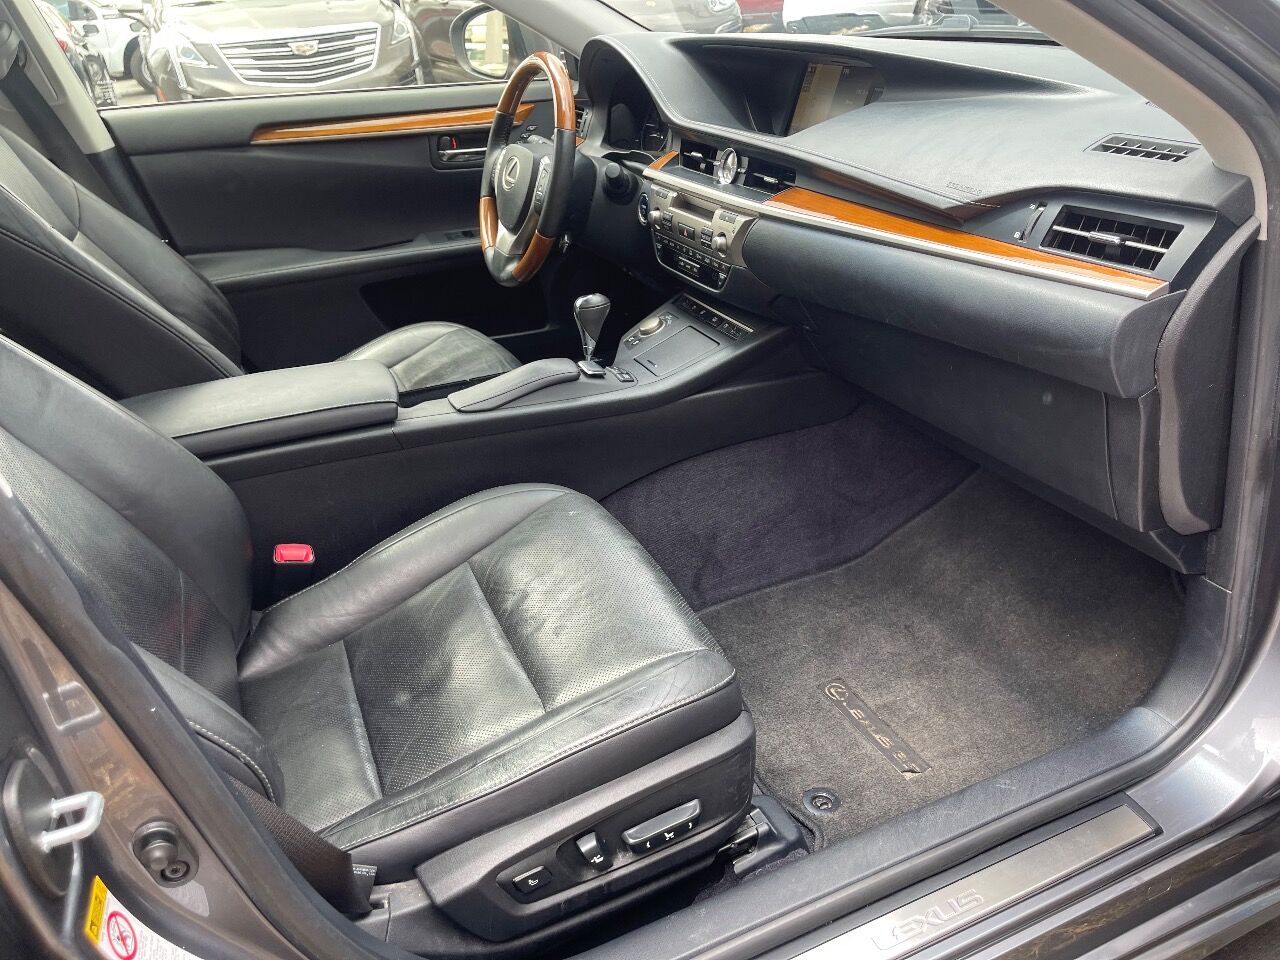 2014 Lexus E-Series Sedan - $13,900